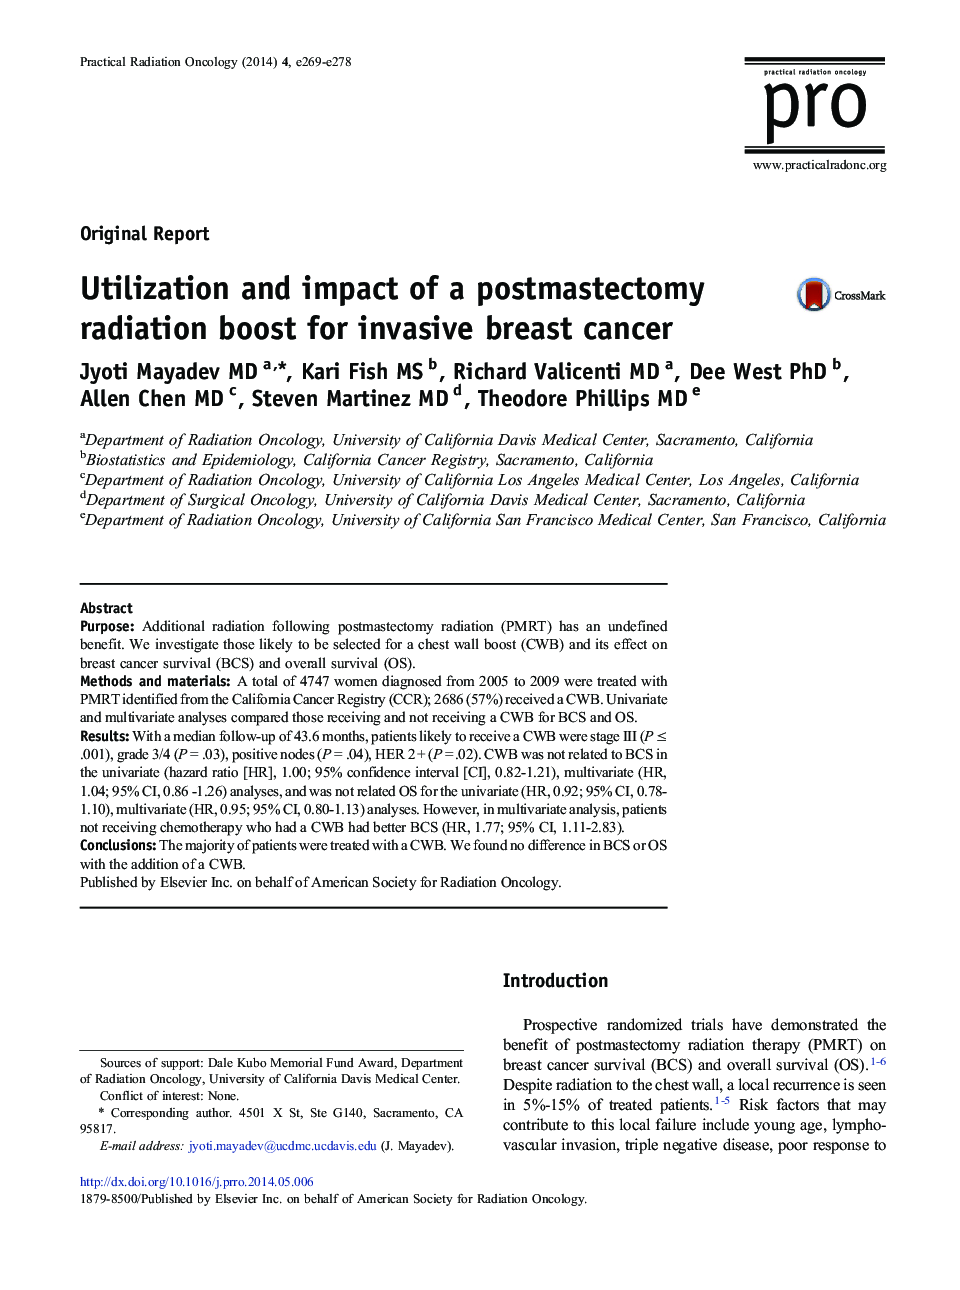 استفاده و تأثیر افزایش پرتوهای ماستکتومی برای سرطان مهاجم پستان 